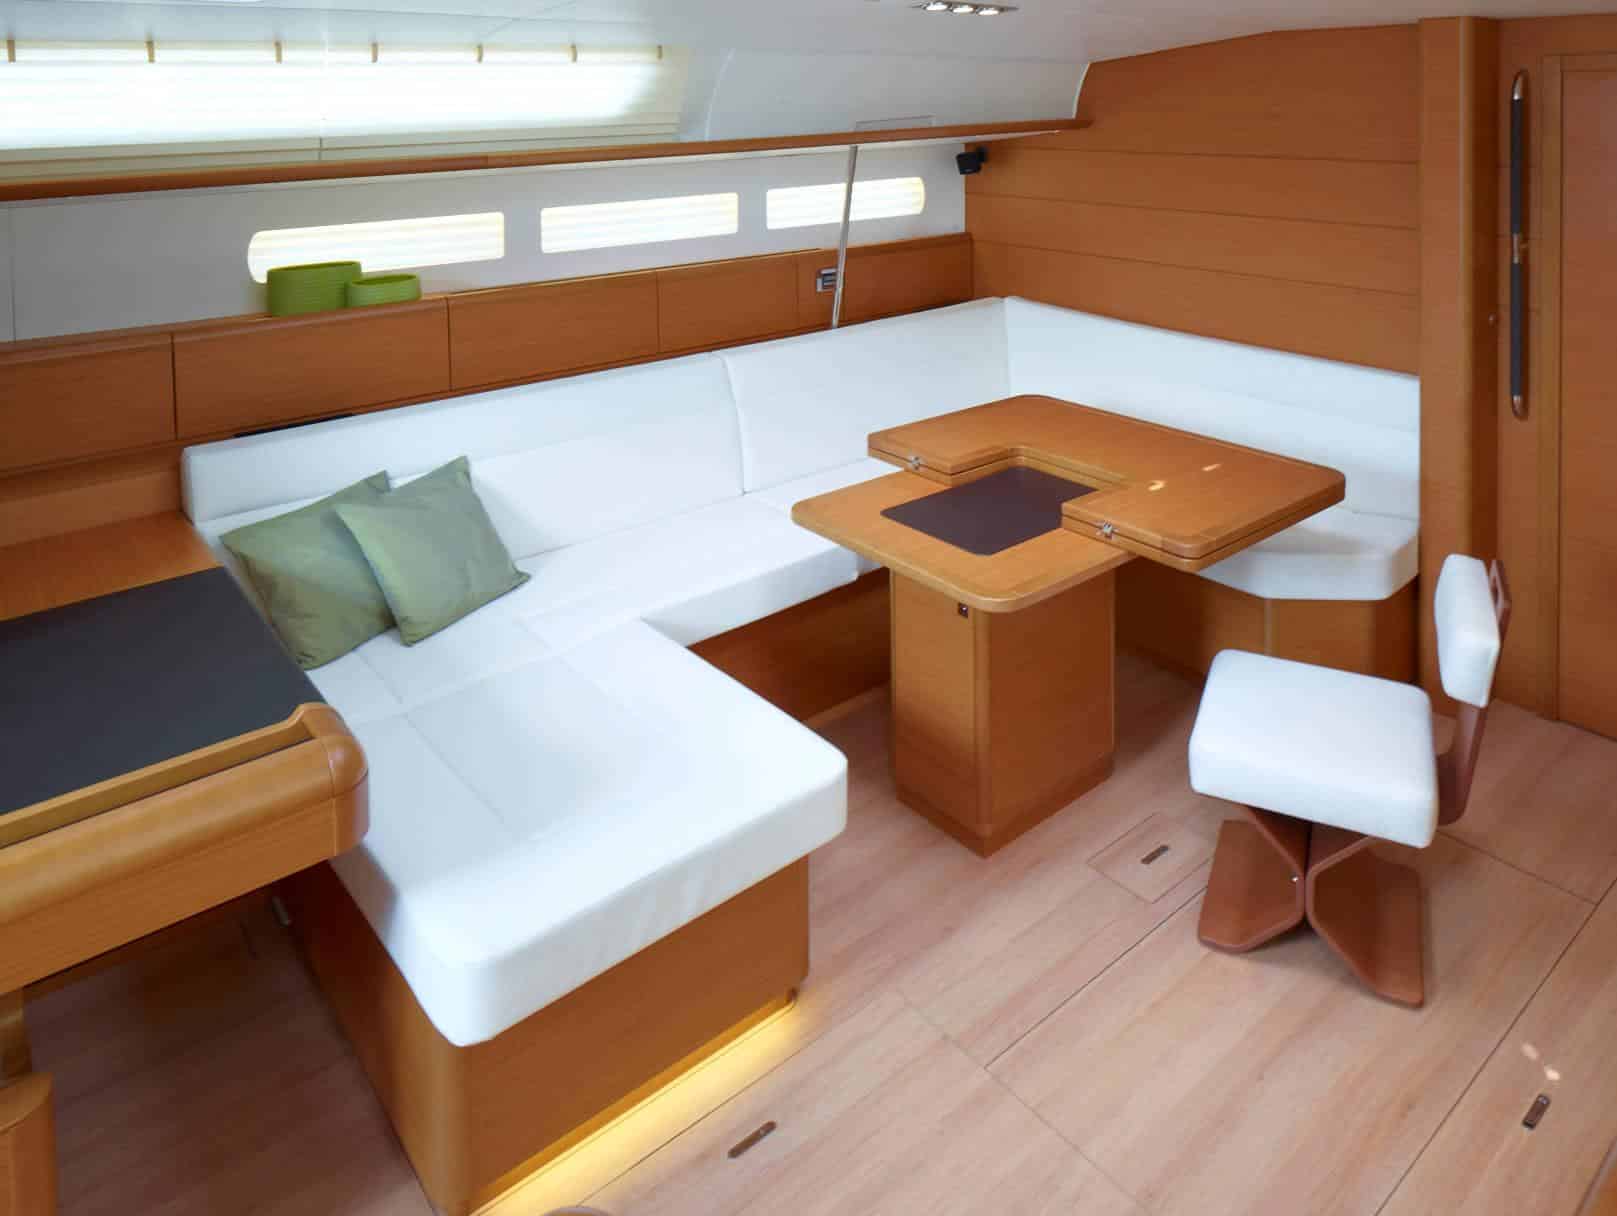 Innenansicht einer modernen Segelyacht mit einem geräumigen Essbereich mit einem weißen L-förmigen Sofa, einem Holztisch und passenden Hockern vor hellen Holzpaneelen und -böden.